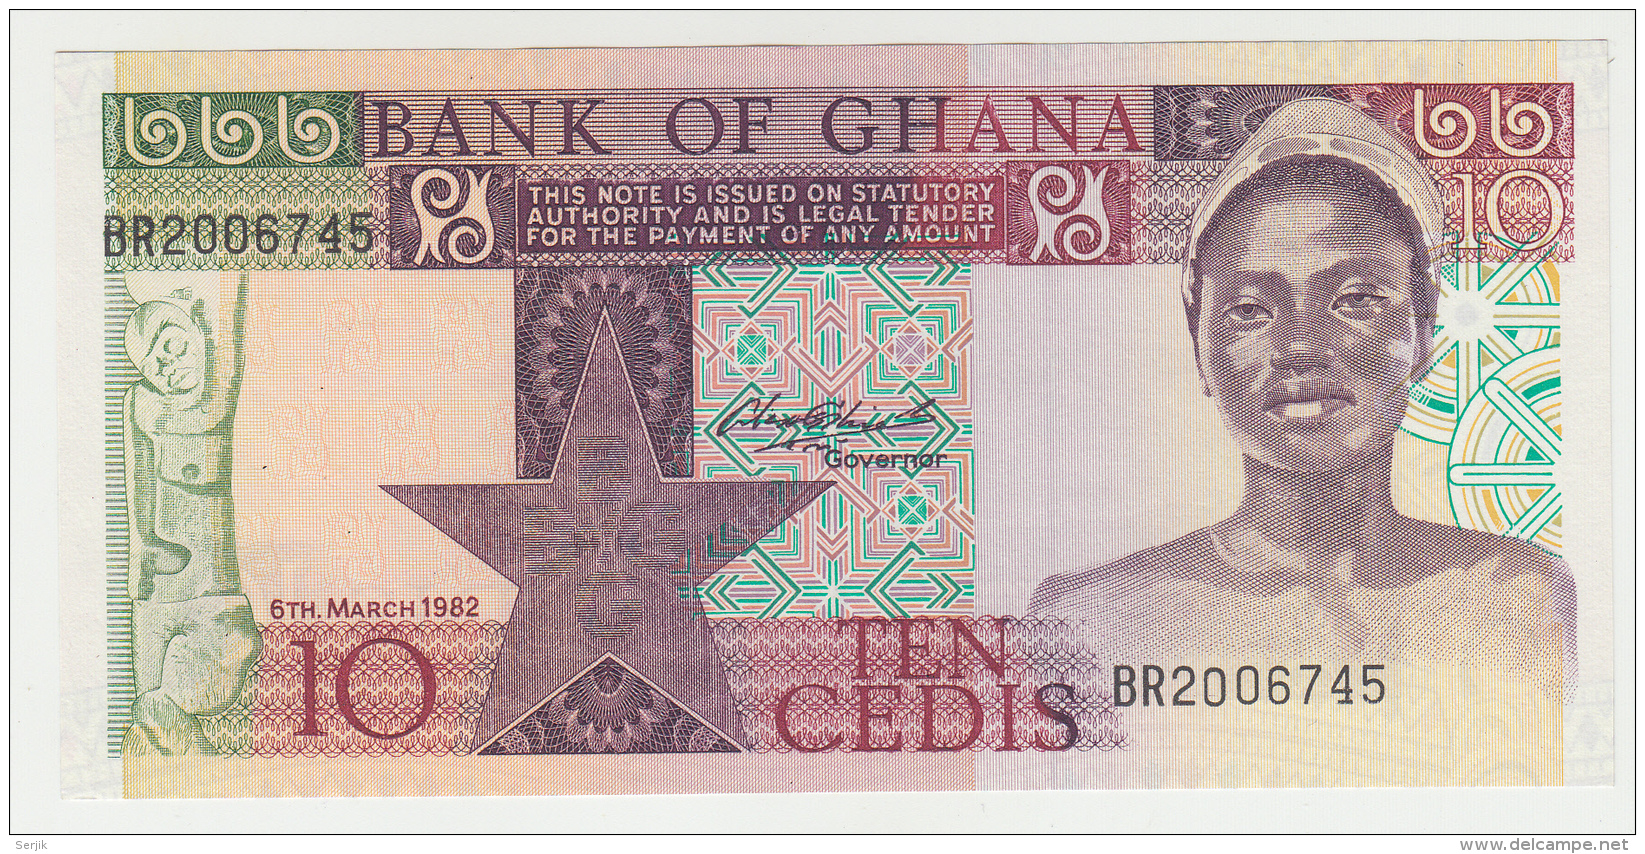 GHANA 10 CEDIS 1982 UNC NEUF PICK 20d  20 D - Ghana